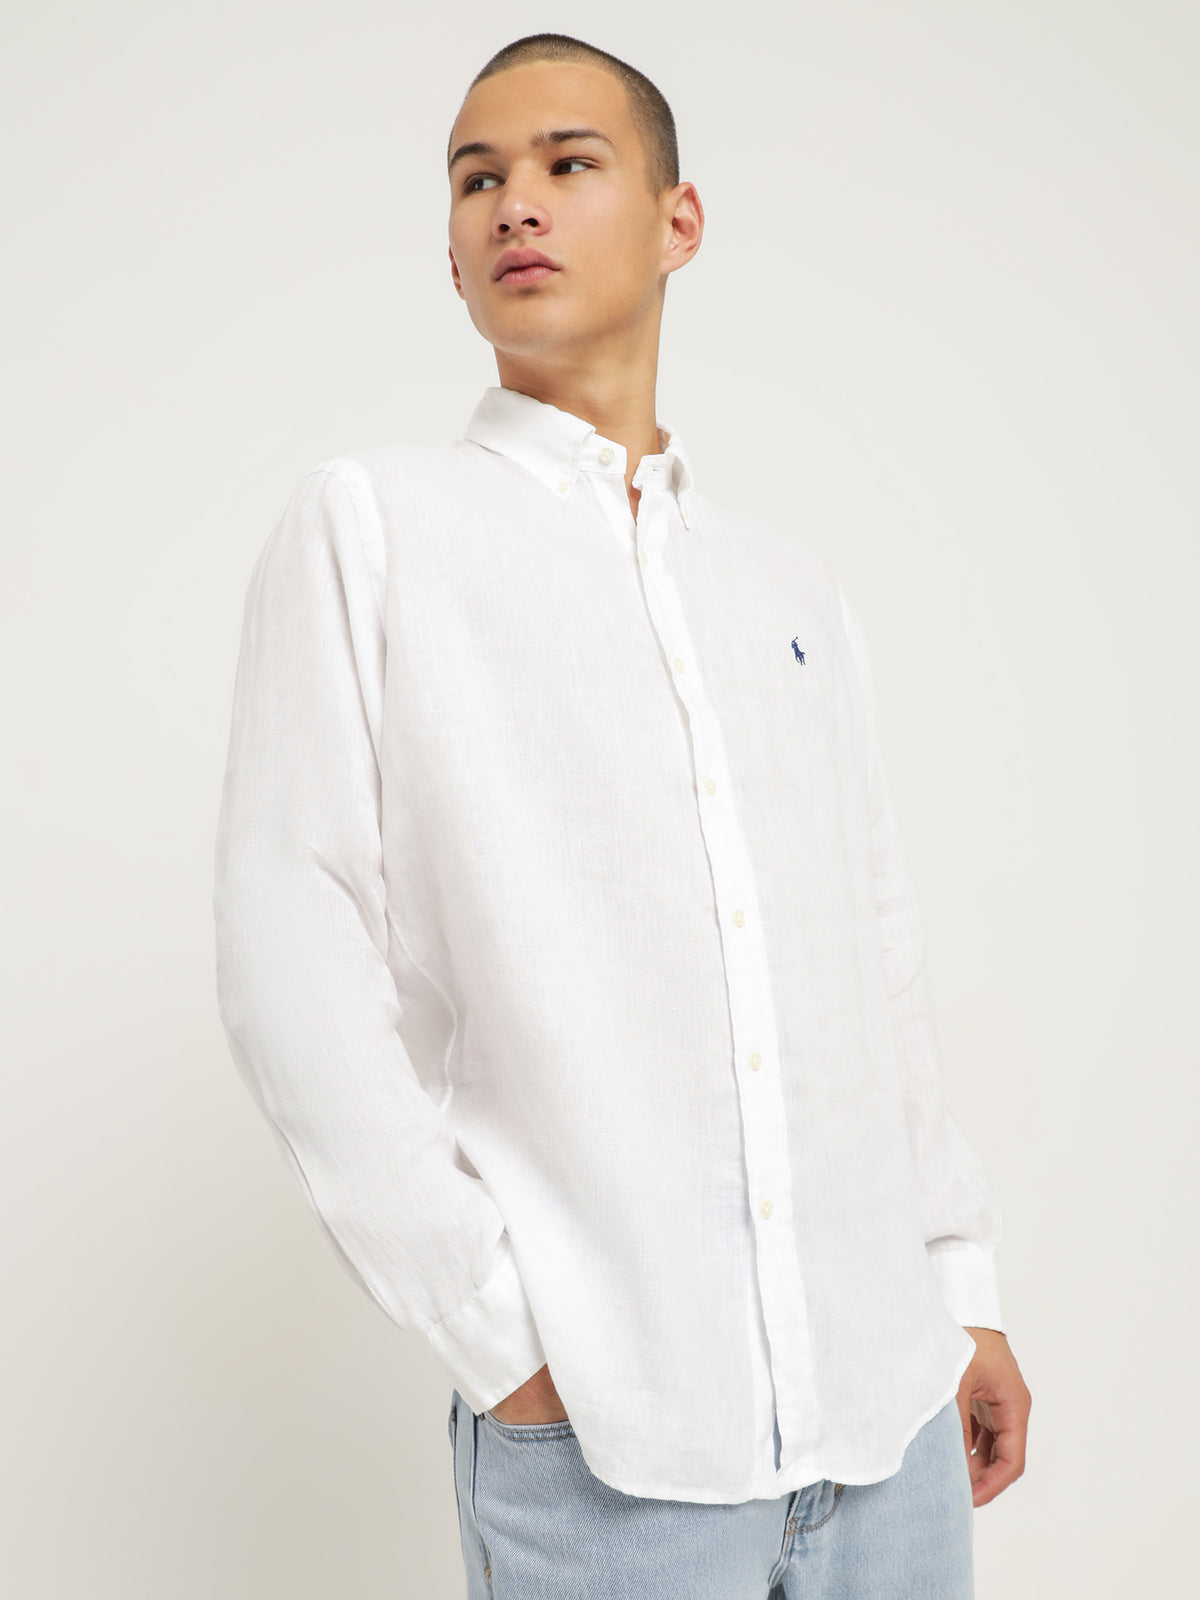 Long Sleeve Linen Shirt in White